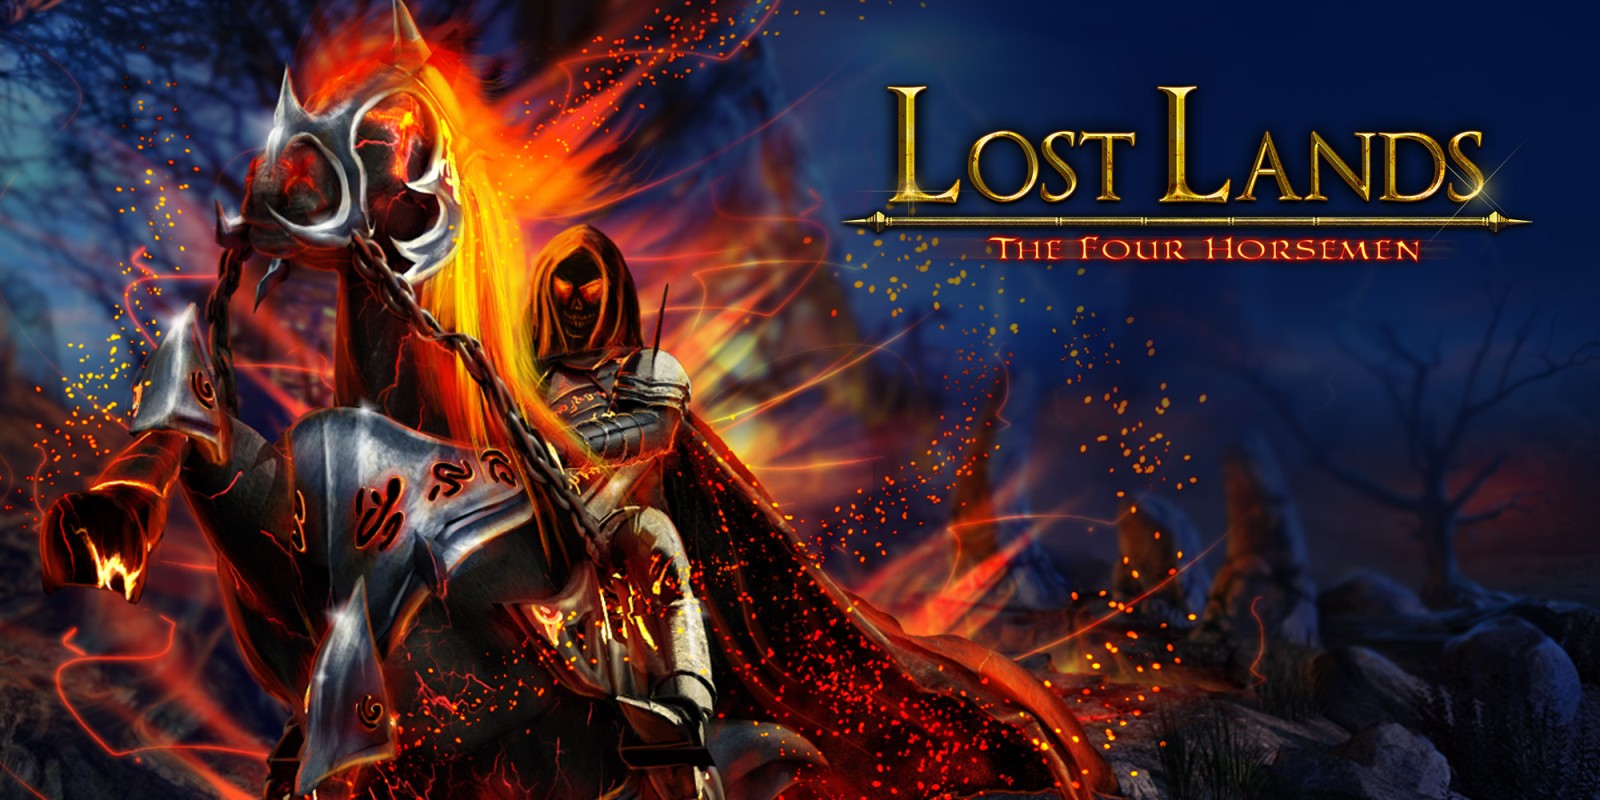 Lost Lands 2 The Four Horsemen